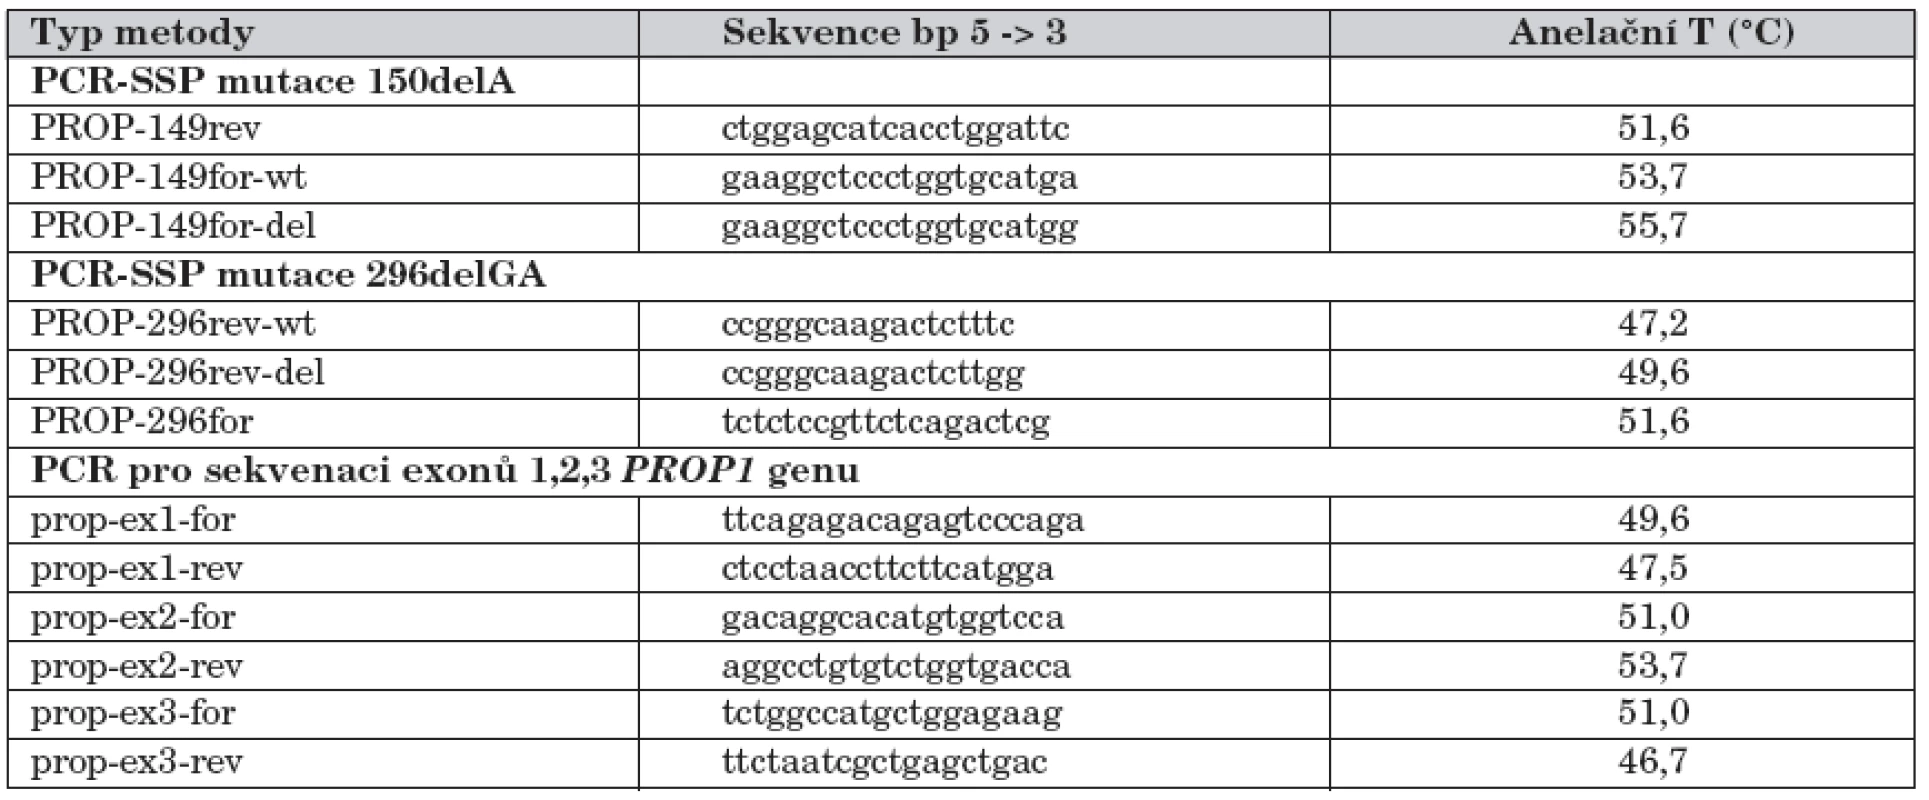 Sekvence primerů použitých při molekulárně genetické analýze mutací PROP1 genu.